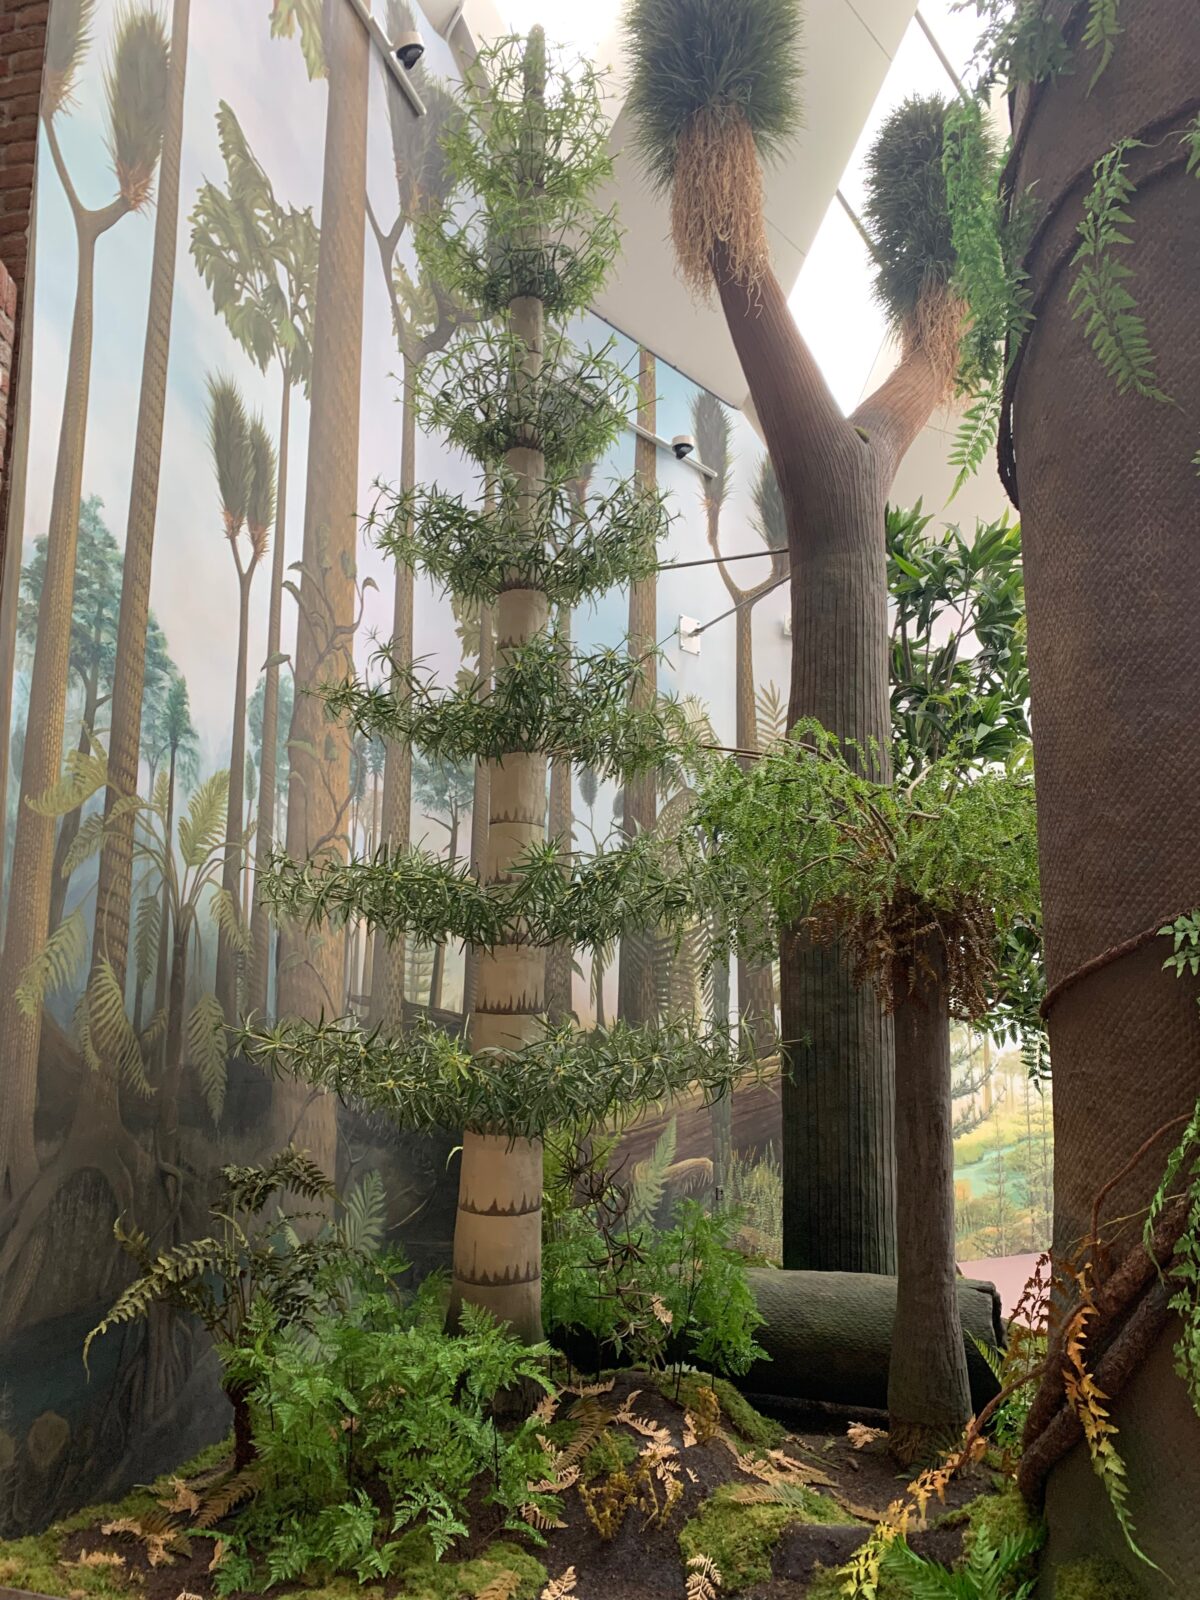 Ausschnitt aus der Malerei der Hintergrundbemalung eines Dioramas mit davor stehenden Pflanzen. Motiv ist ein Karbonwald mit Bäumen und einem See. Ausstellungsort ist das Museum am Schoelerberg in Osnabrück